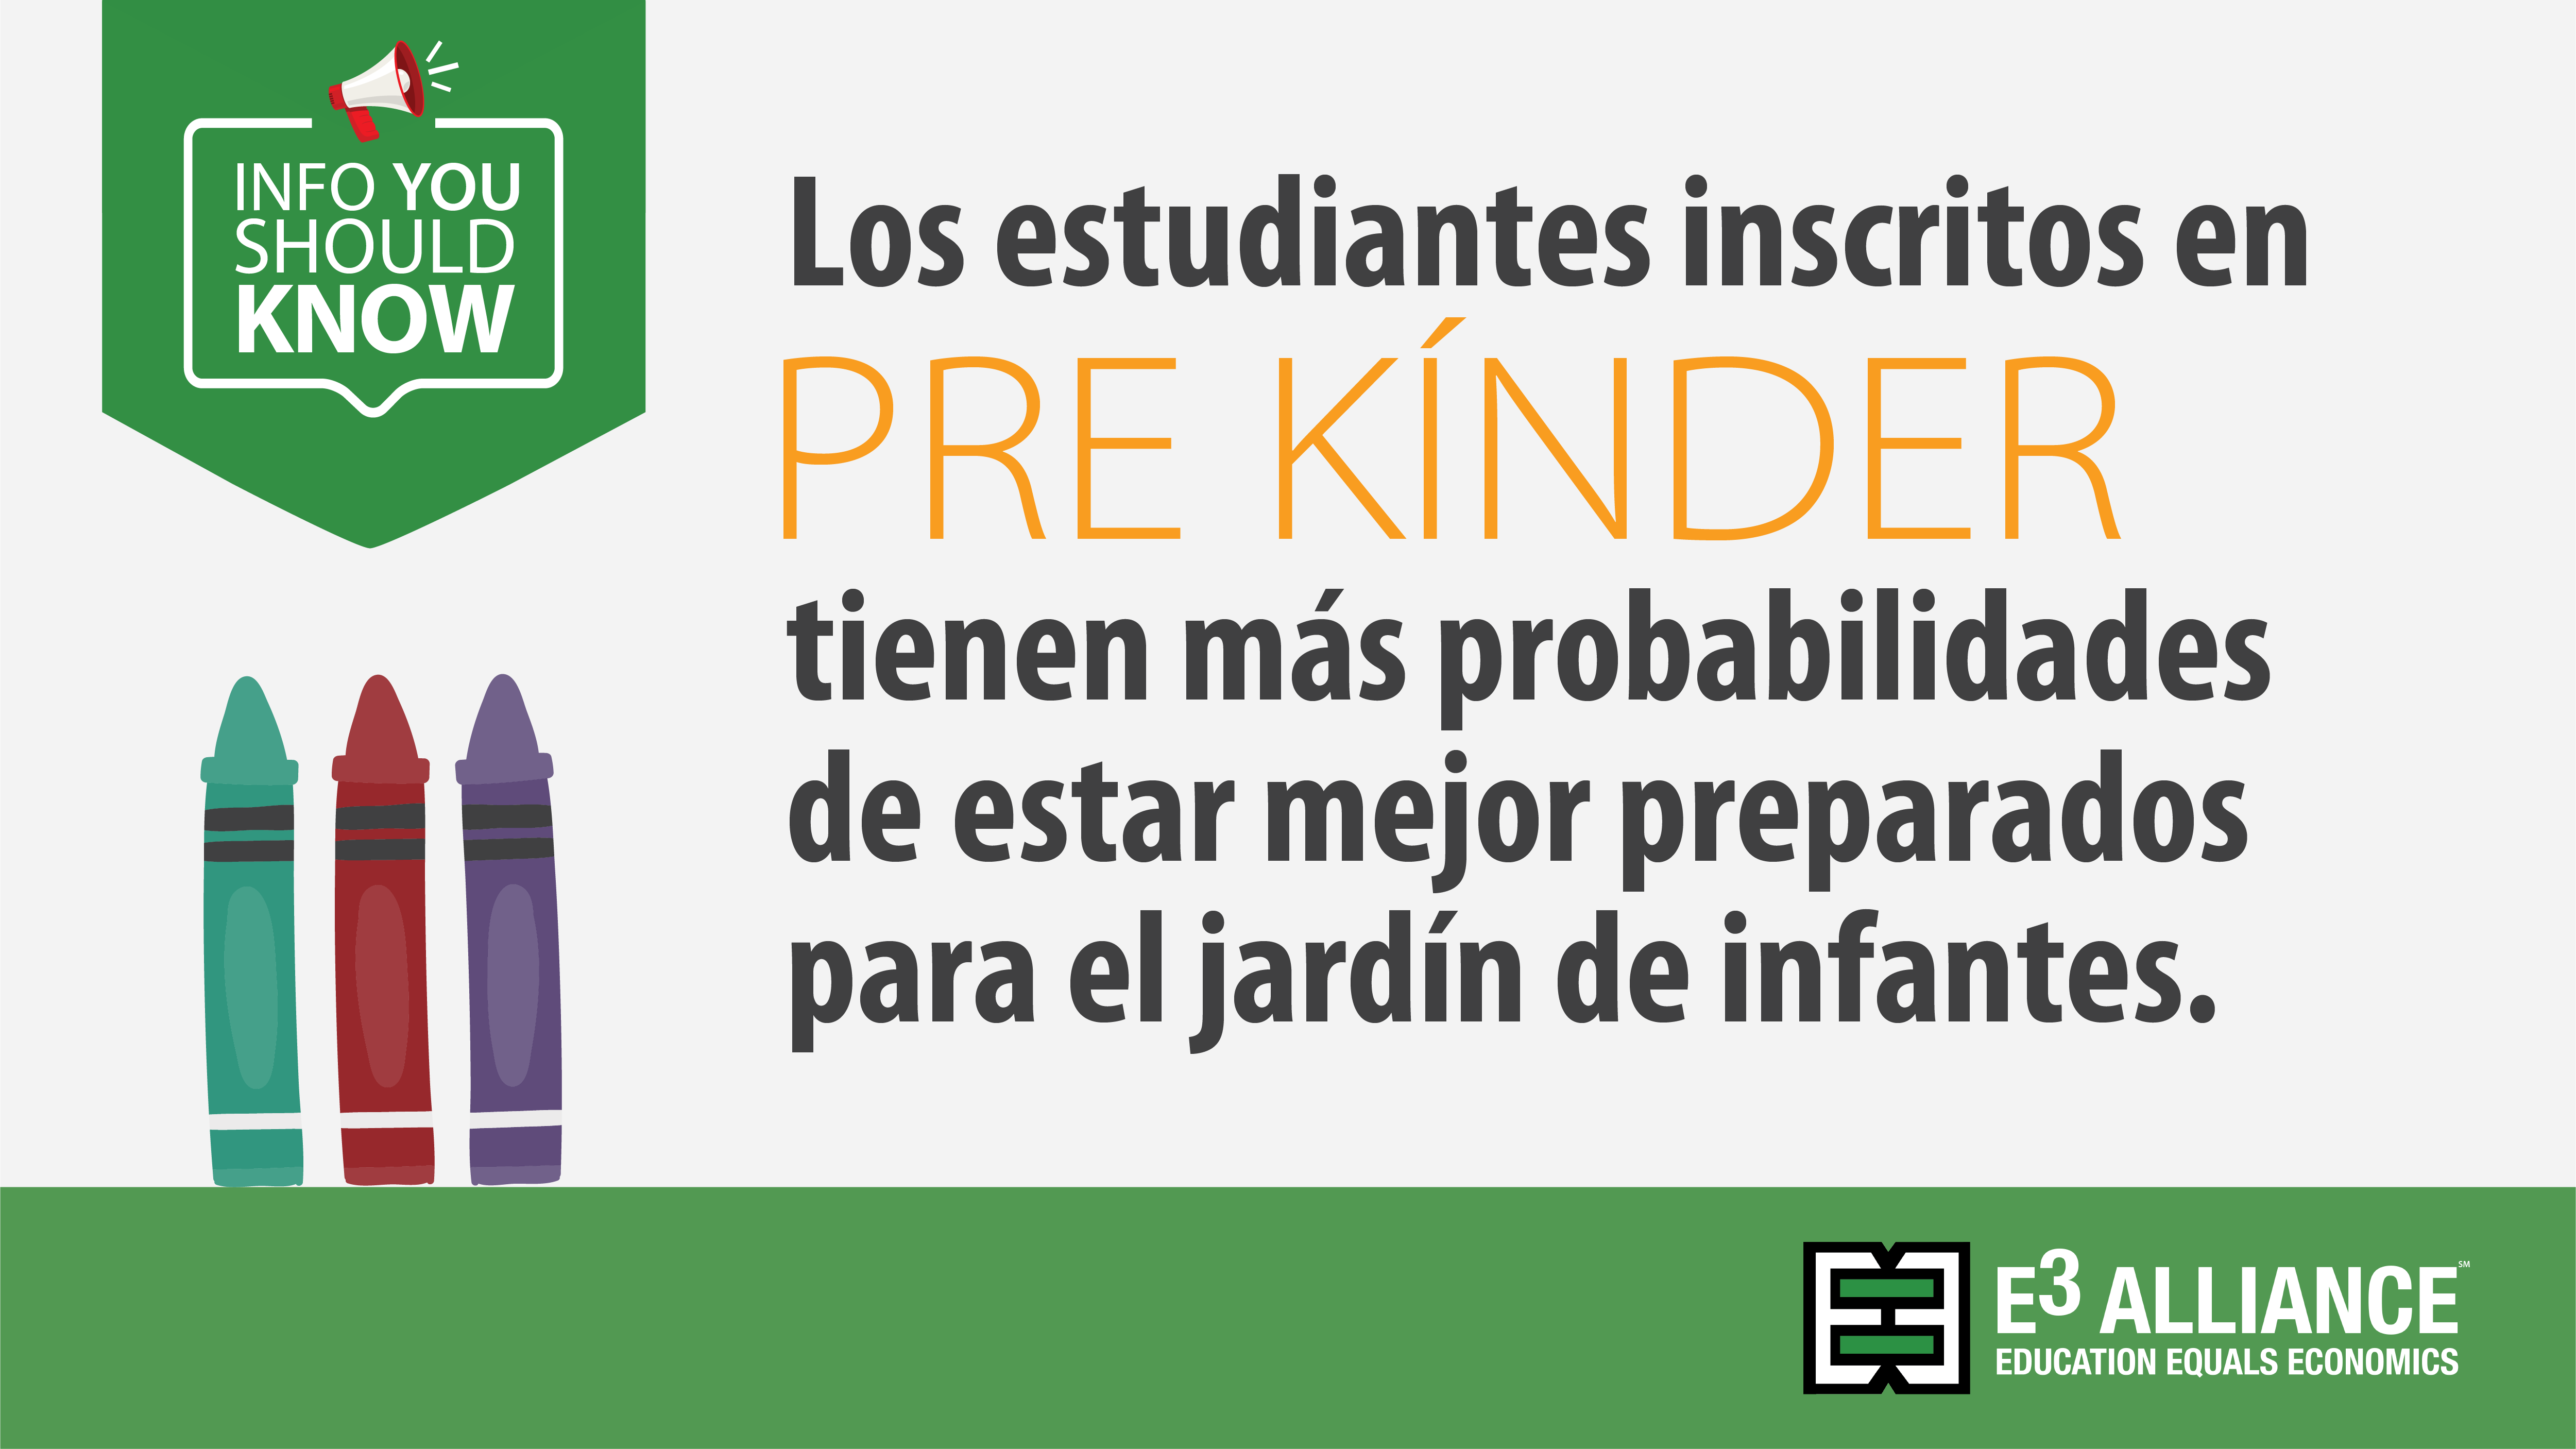 Los estudiantes inscritos en pre kínder tienen más probabilidades de estar mejor preparados para el jardín de infantes.